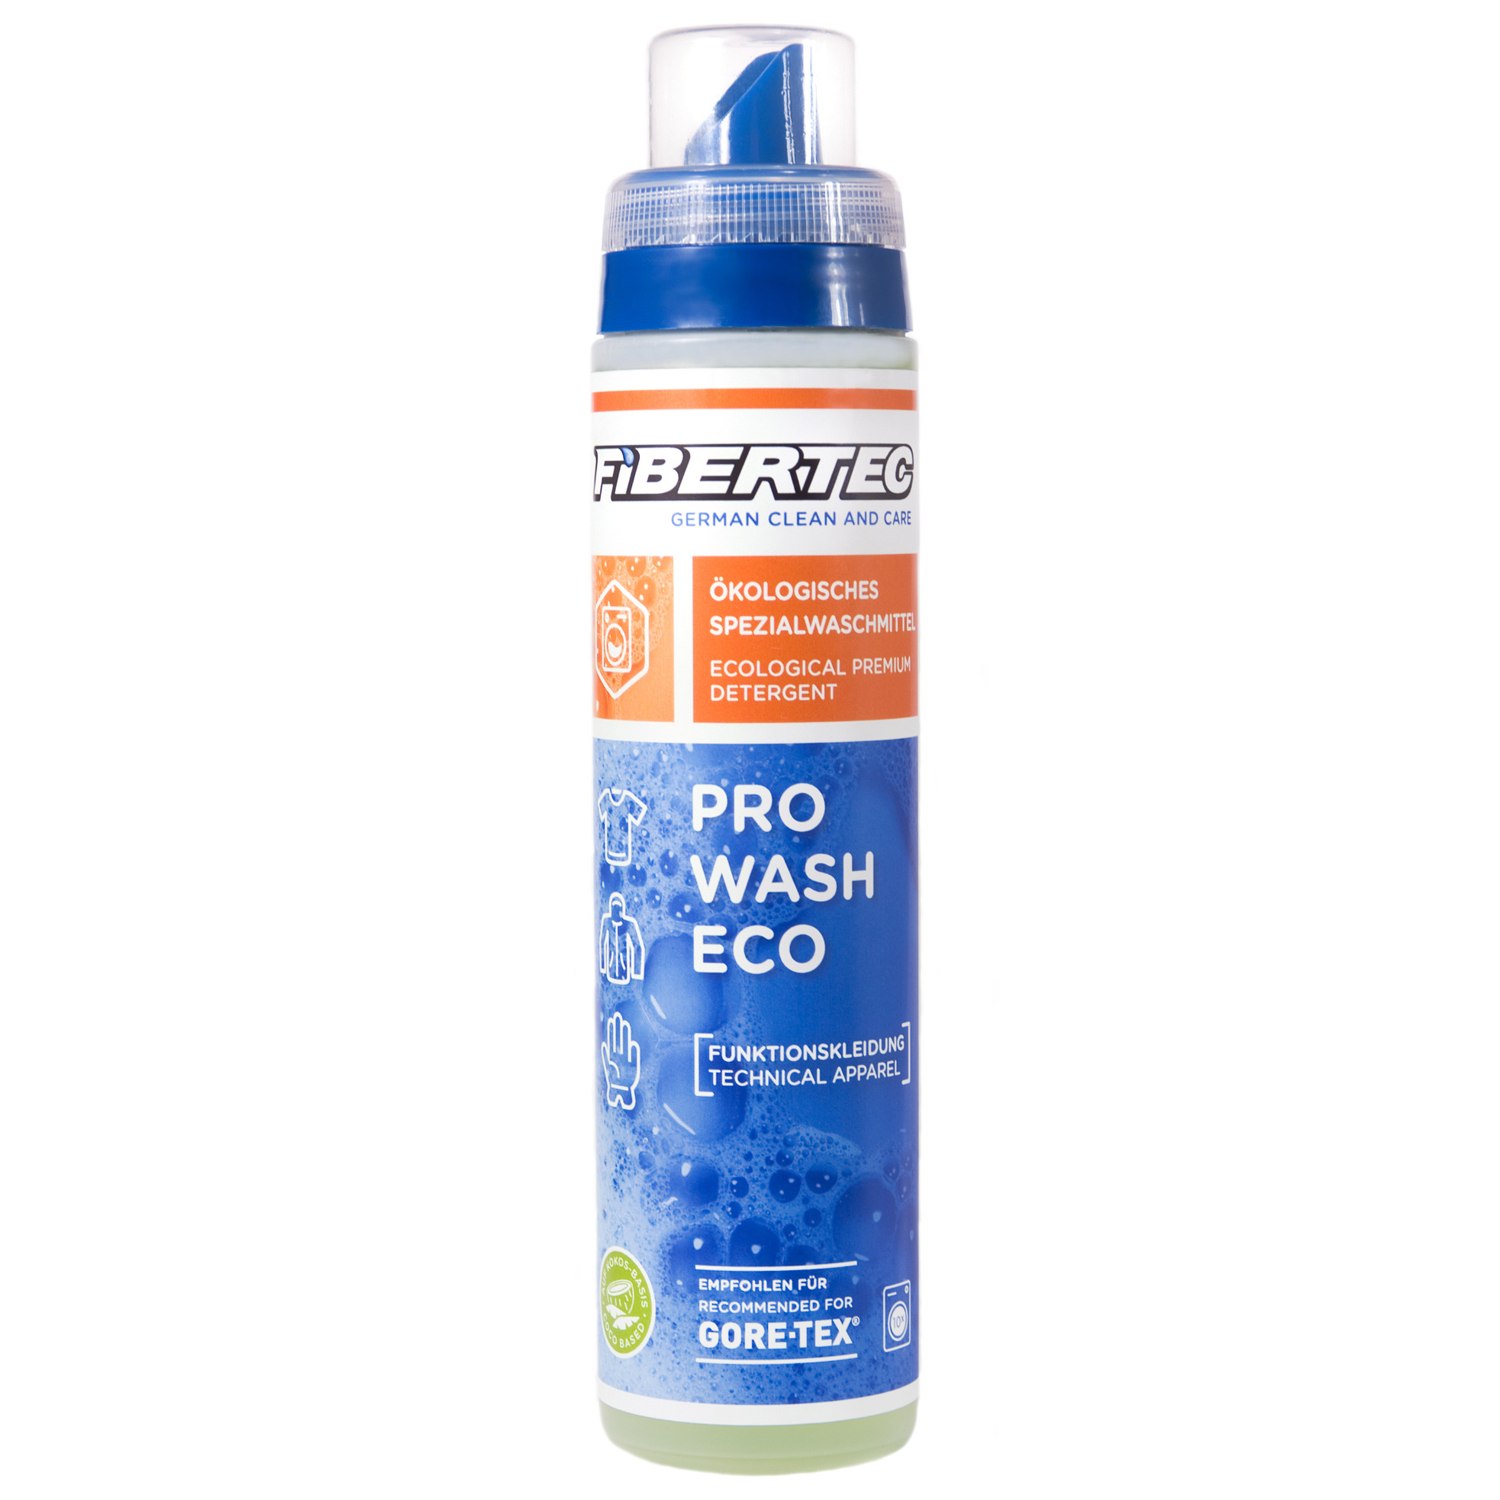 Produktbild von Fibertec Pro Wash Eco Spezialwaschmittel - 250ml